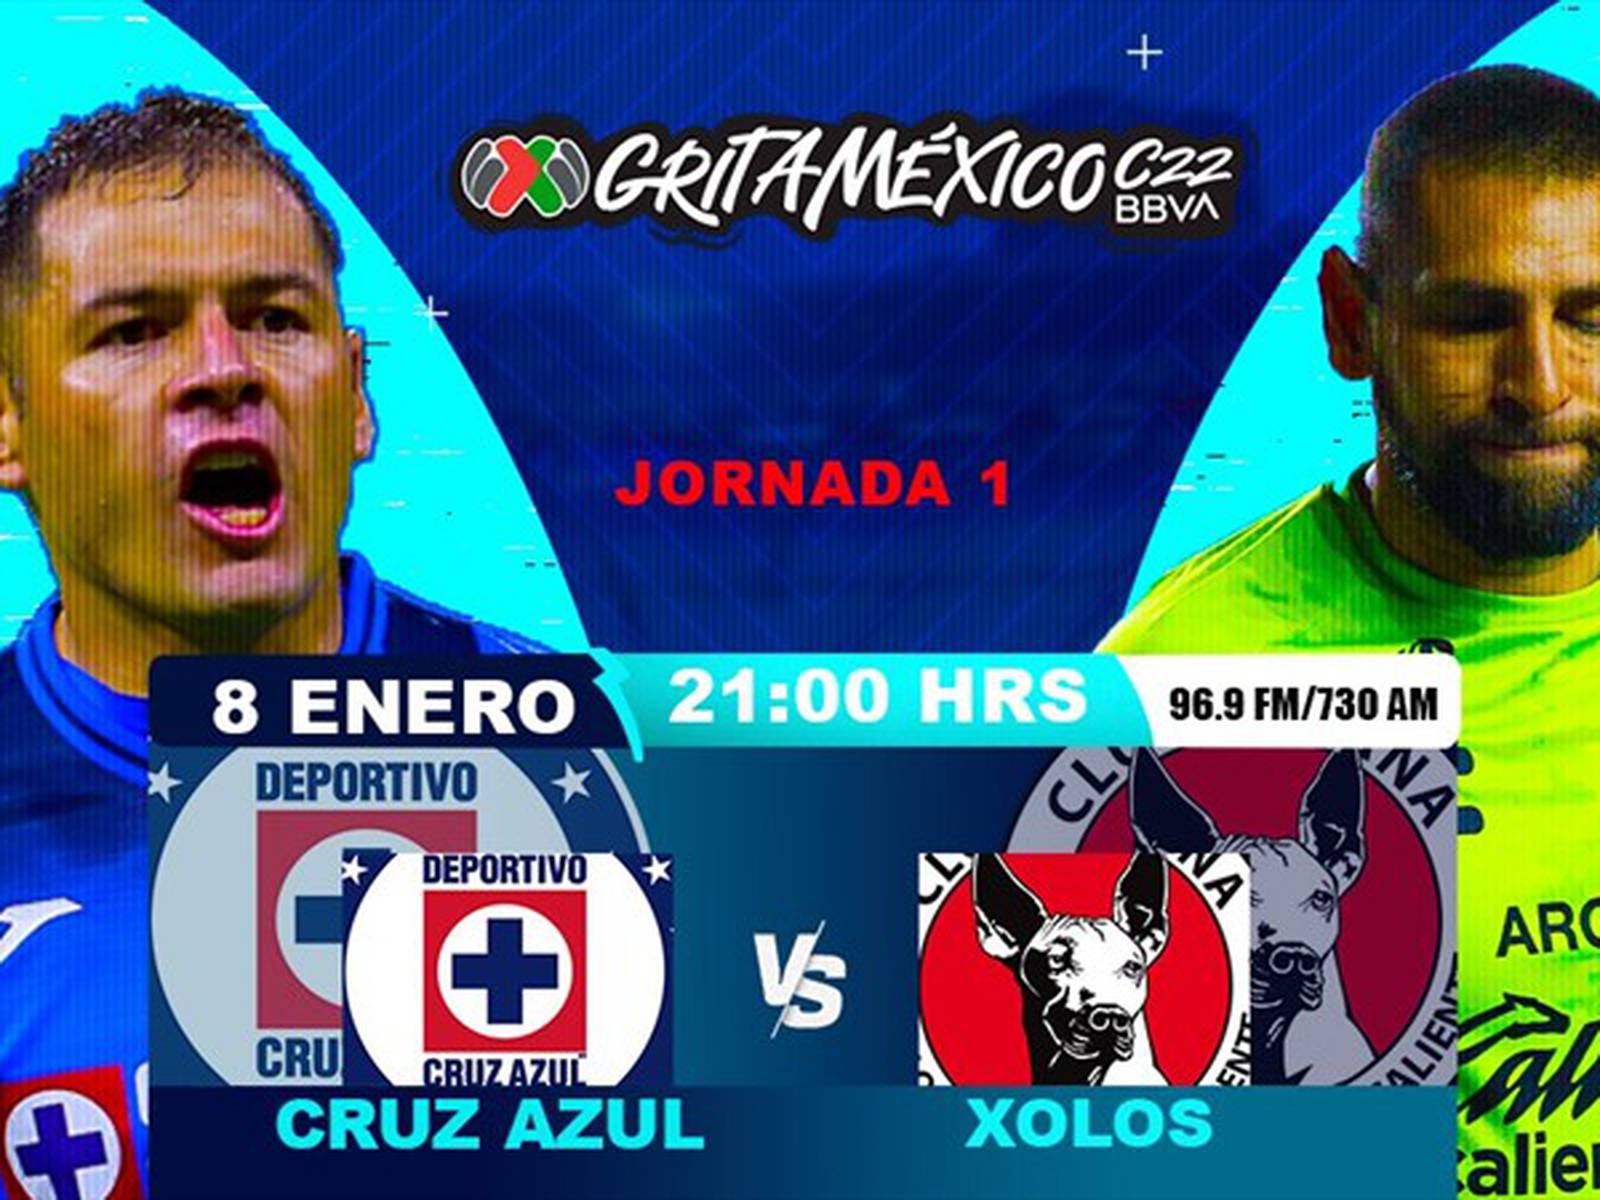 Cruz Azul vs Xolos, en vivo, Jornada 1, Liga MX, Grita México C22